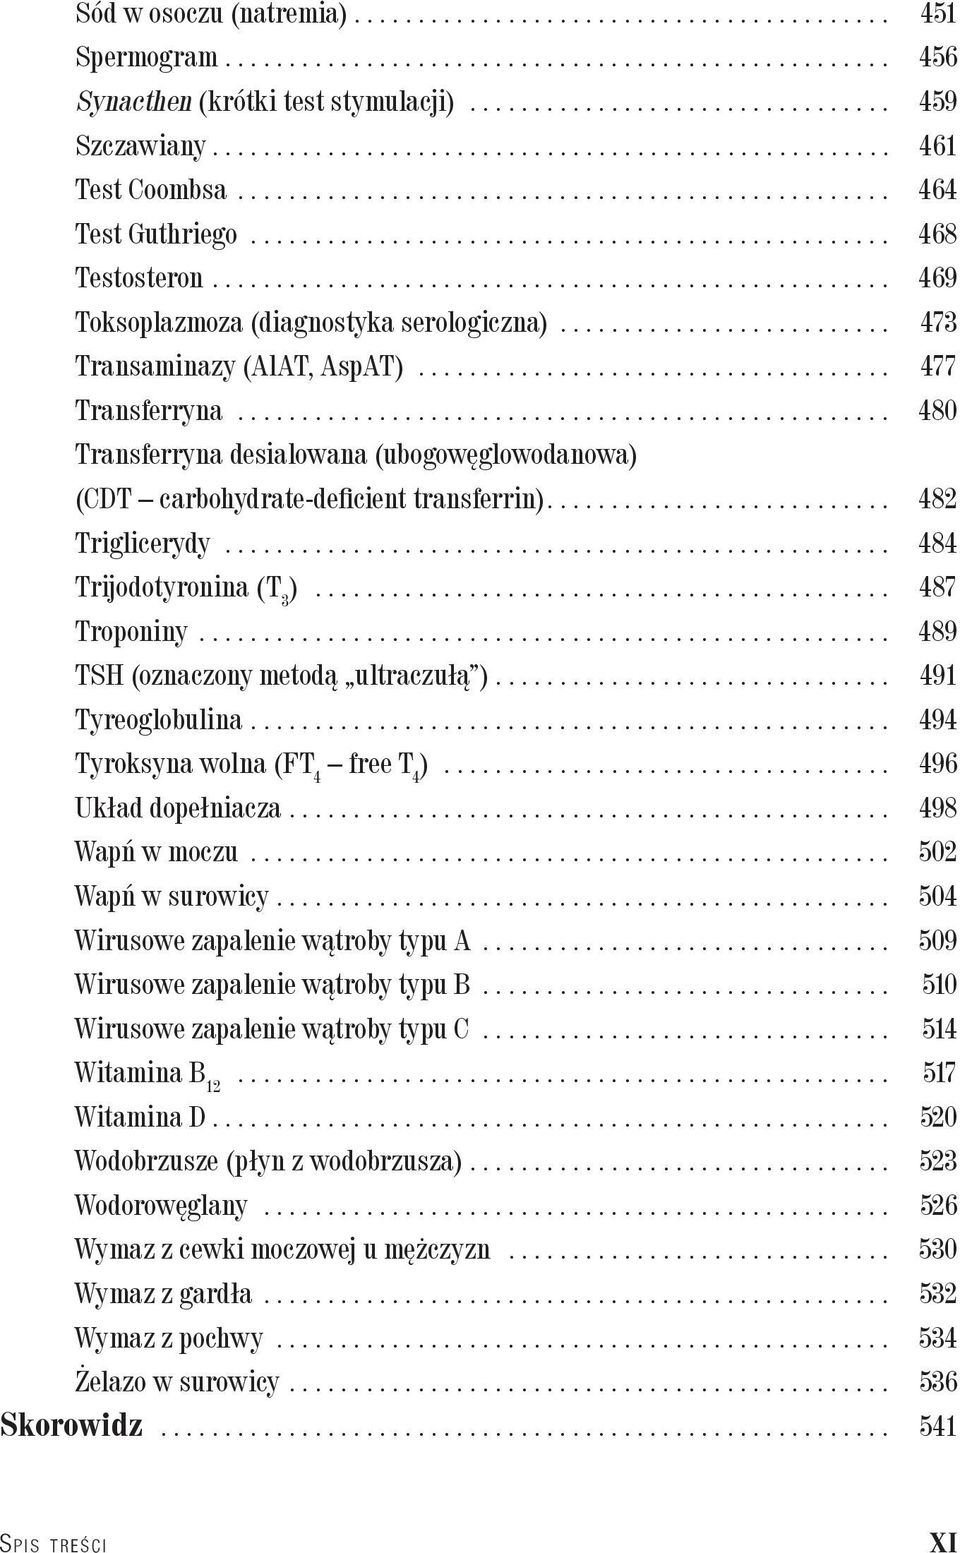 .. 480 Transferryna desialowana (ubogowęglowodanowa) (CDT carbohydrate-deficient transferrin).... 482 Triglicerydy... 484 Trijodotyronina (T 3 )... 487 Troponiny.